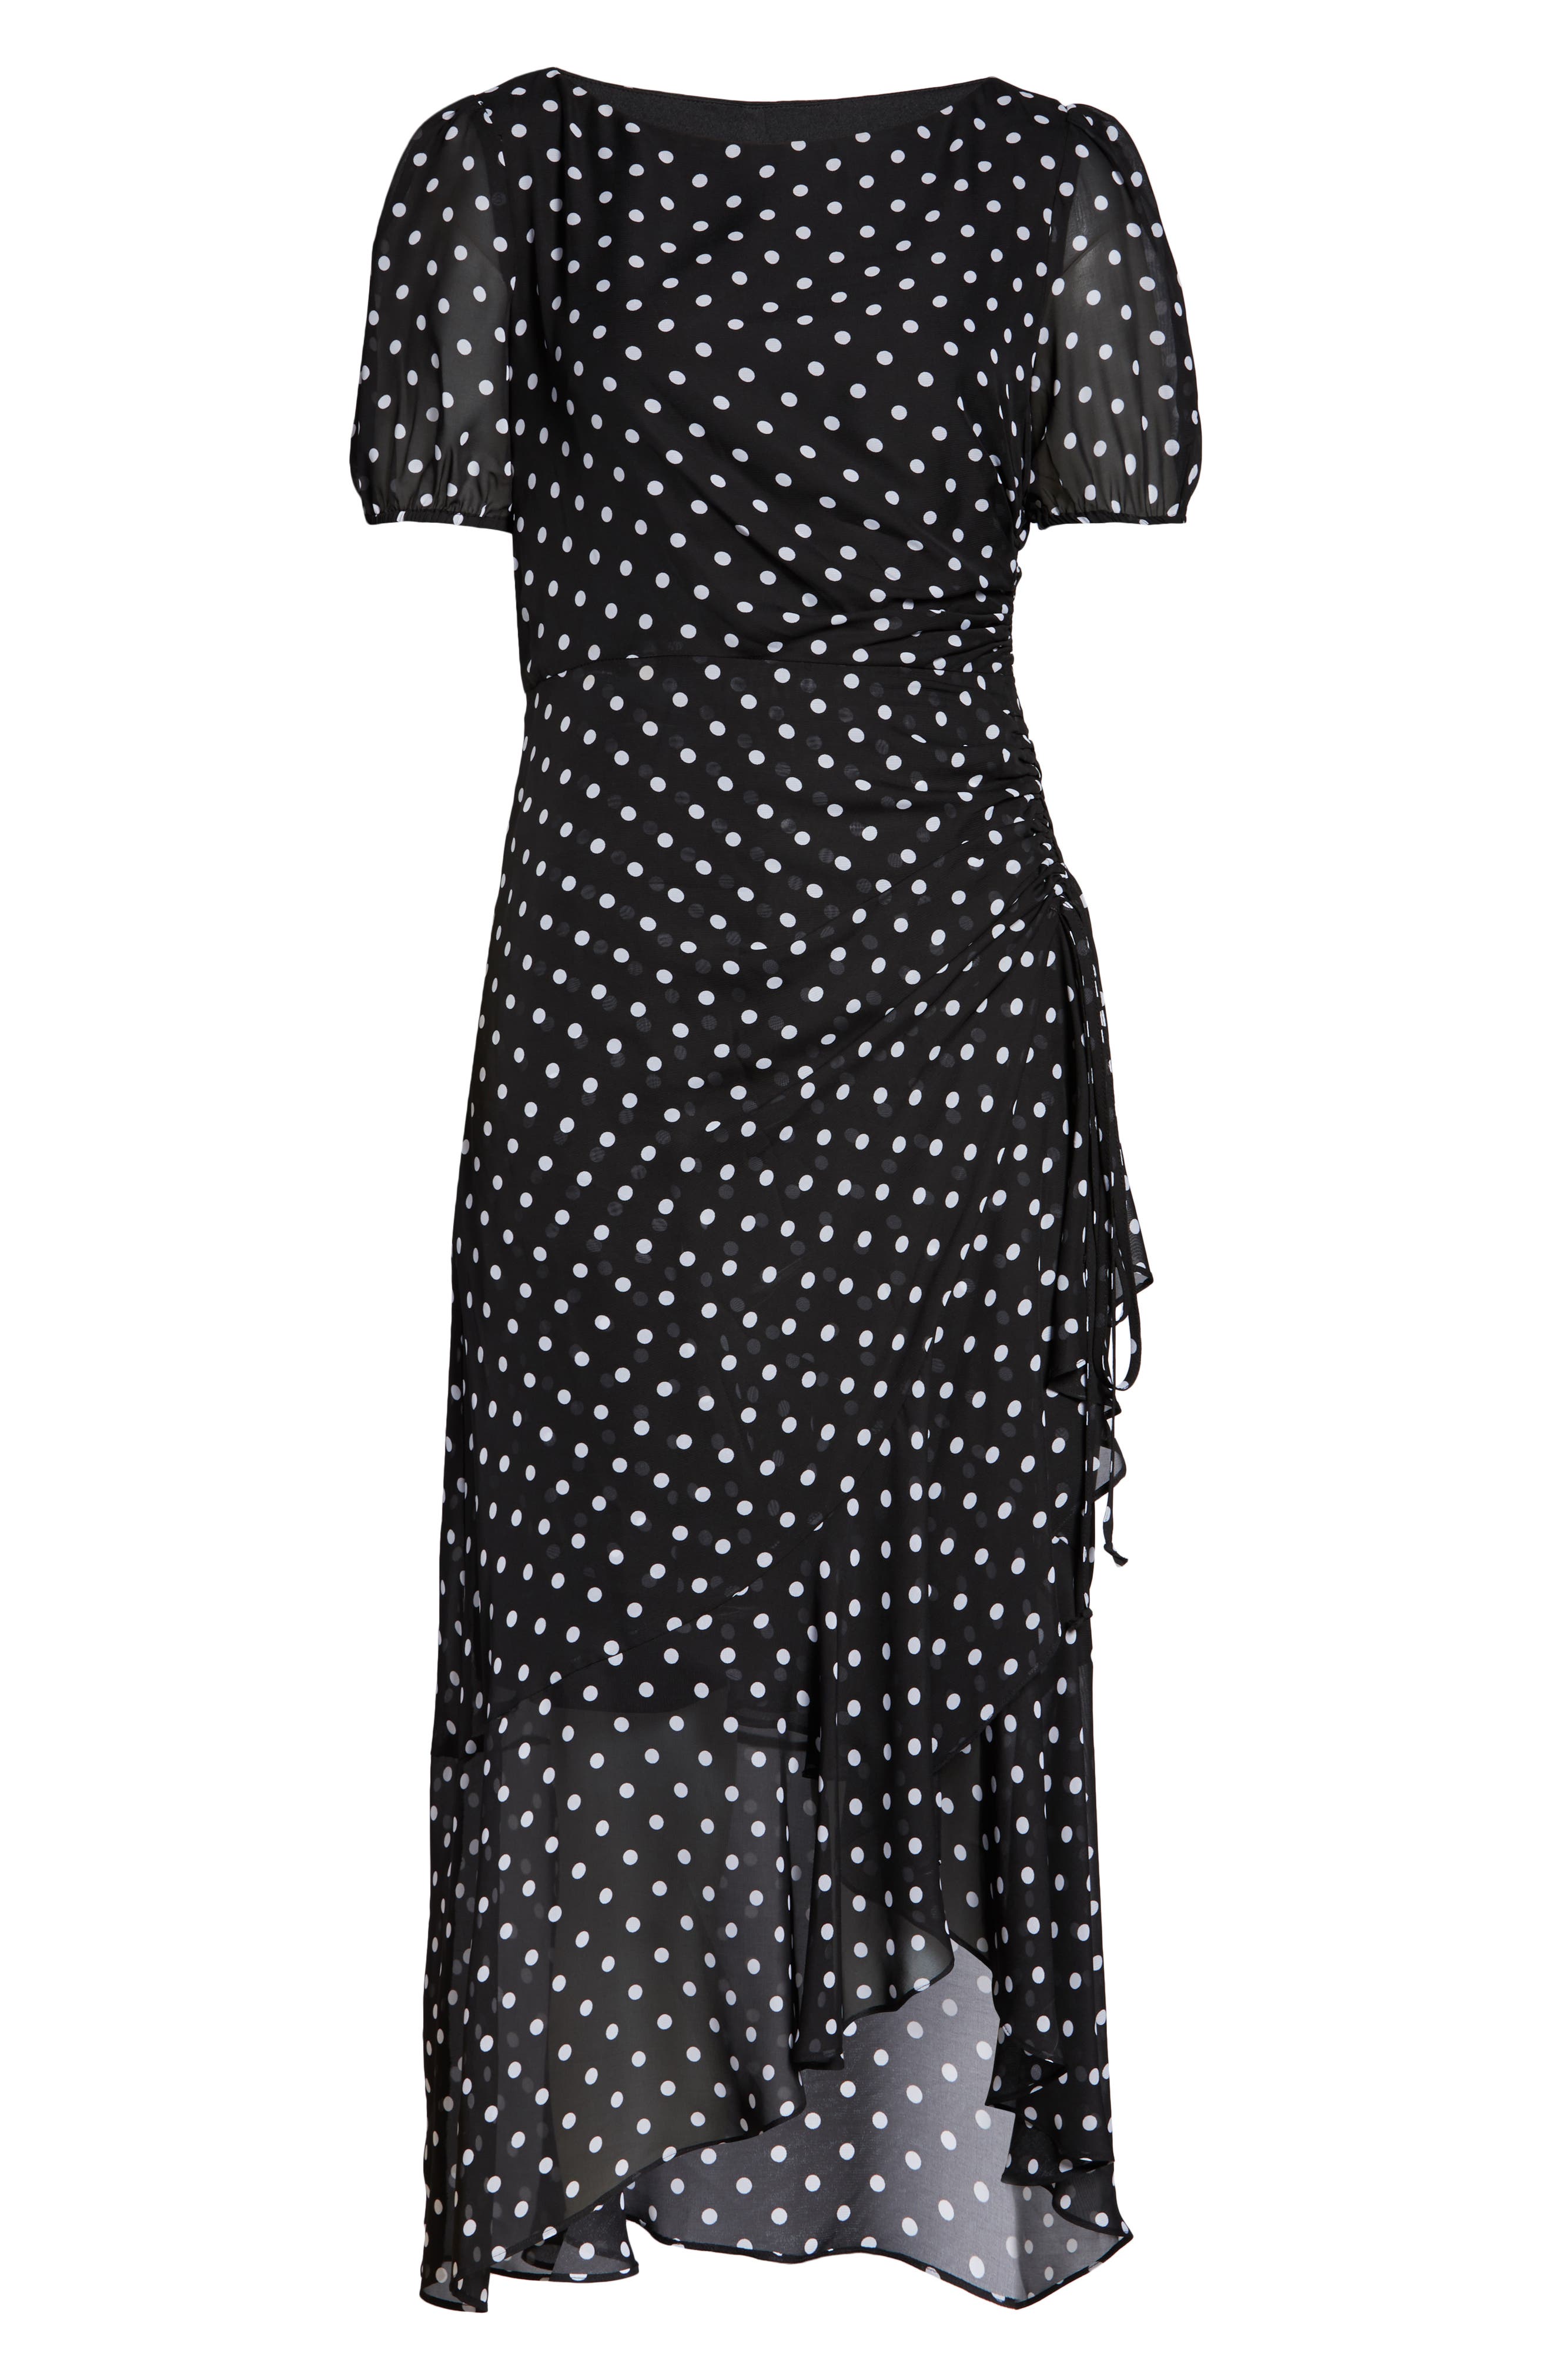 Julia Jordan Dot Print Chiffon Dress In Black/ White